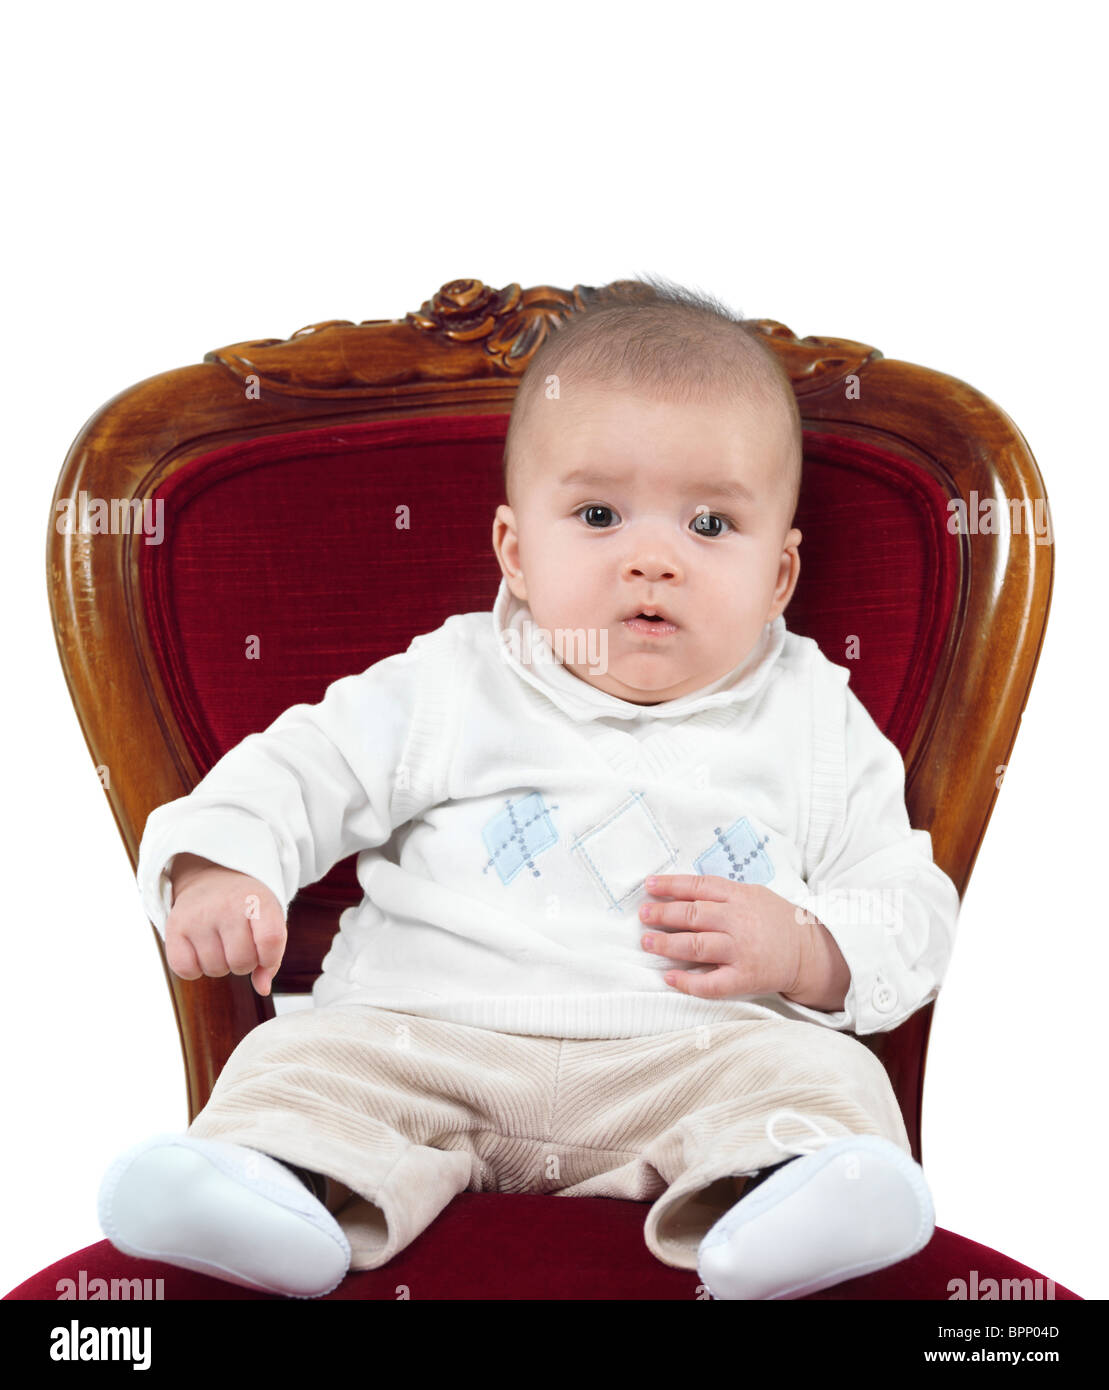 Photo humoristique d'un bébé de quatre mois garçon assis sur une chaise comme un roi sur un trône. Isolé sur fond blanc. Banque D'Images